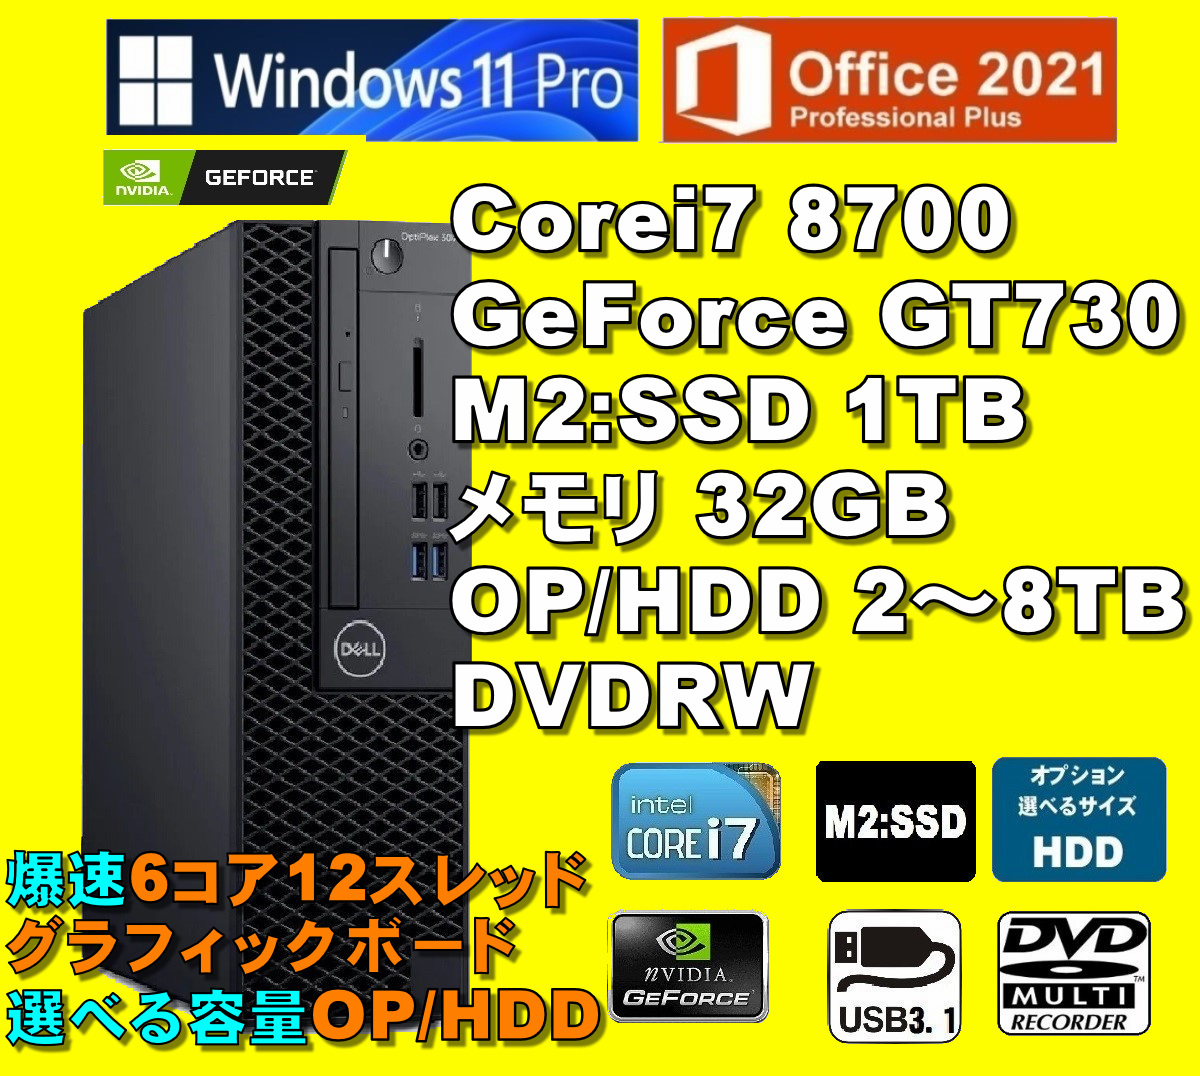 爆速仕様！/ Corei7-8700/ 新品M2:SSD-1TB/ nVIDIA GeForce-GT730/ メモリ-32GB/ OP-HDD/ DVDRW/ Win11Pro/ Office2021Pro/メディア15_＊OPカードリーダーは未搭載です